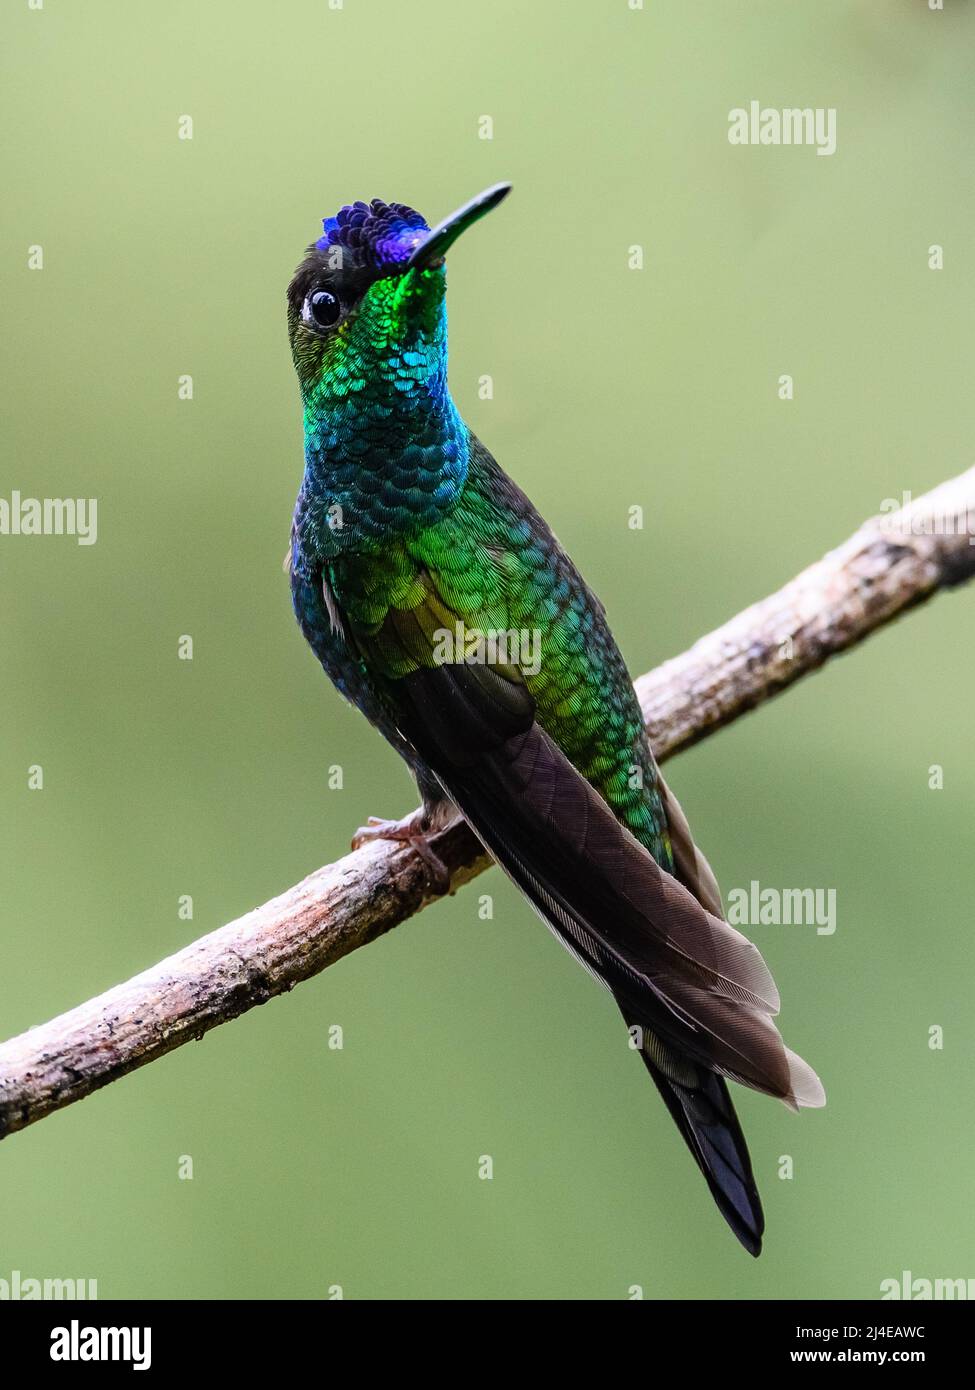 Ein männlicher, violett-frontierter Brilliant-Kolibri (Heliodoxa leadbeateri), der auf einem Ast thront. Kolumbien, Südamerika. Stockfoto